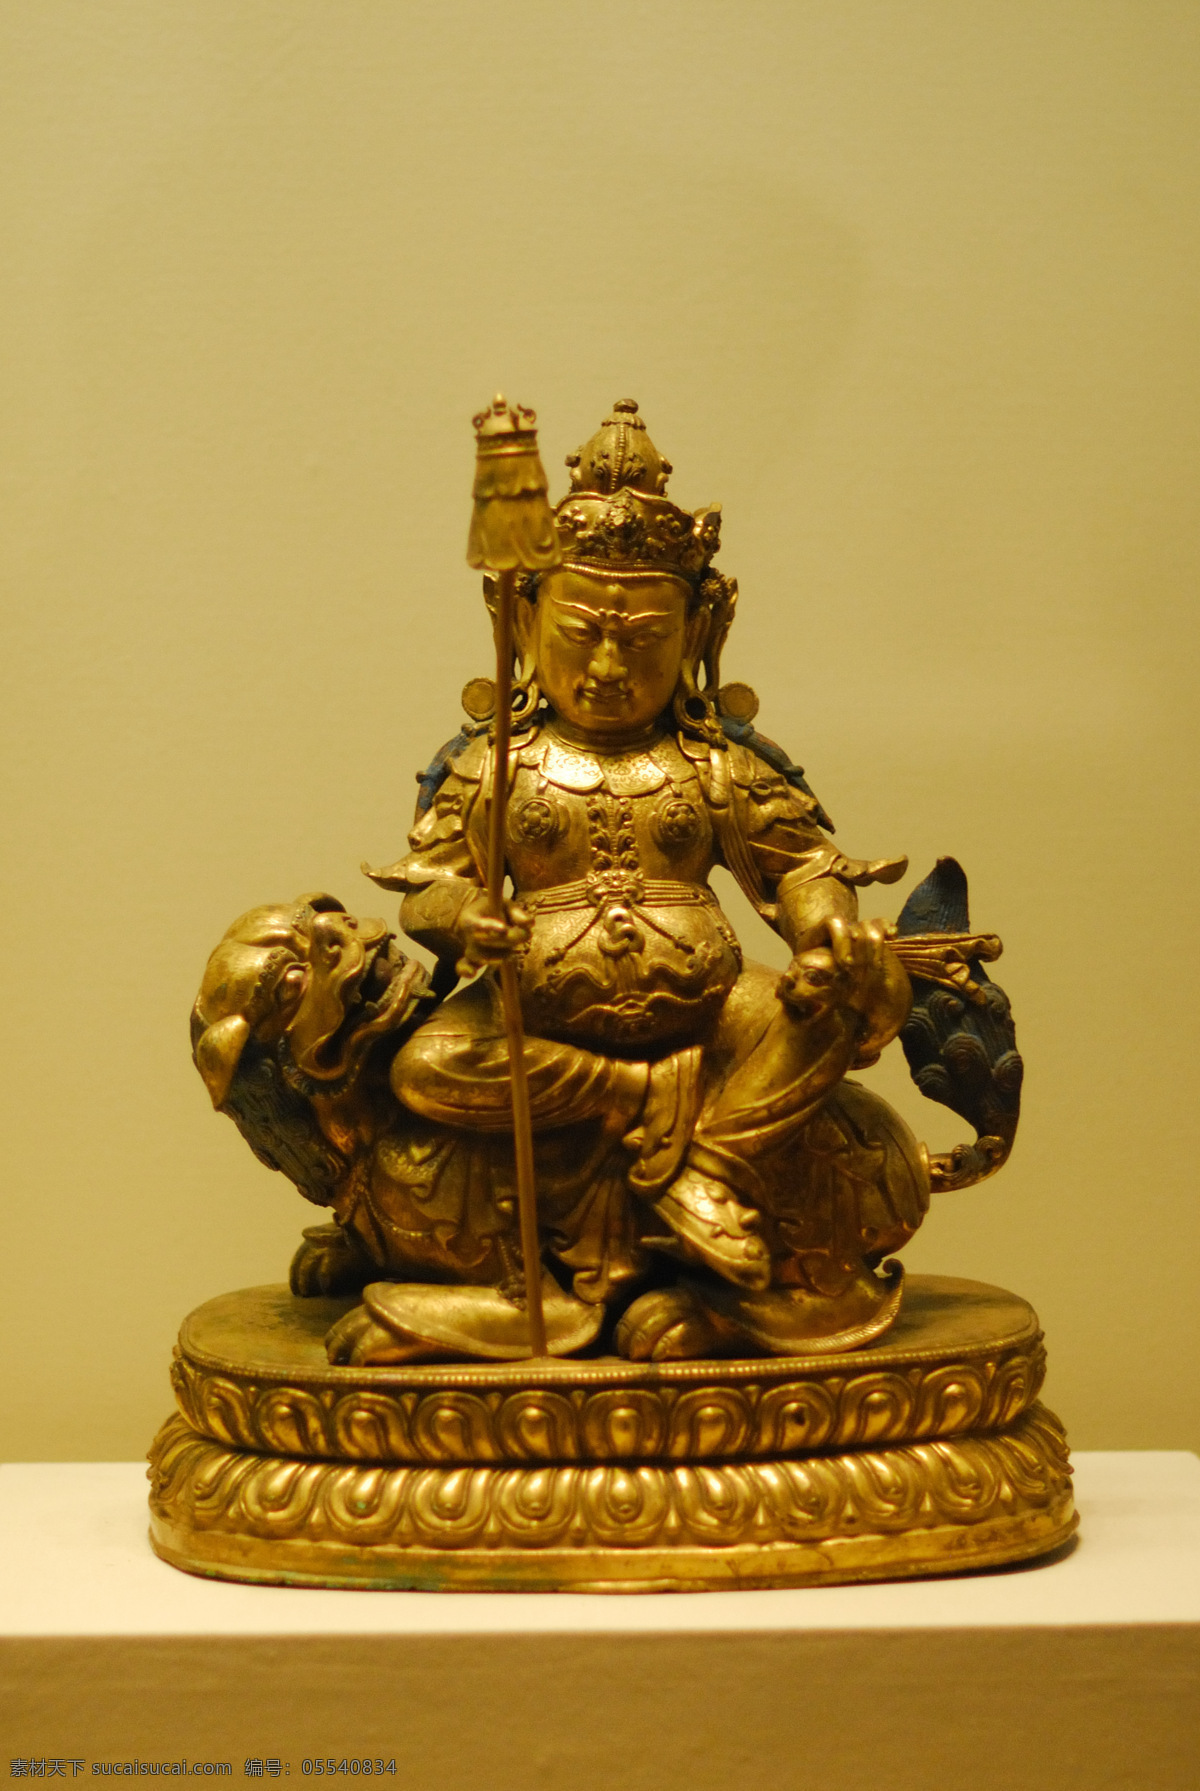 菩萨像 佛像 神像 天王 天神 雕像 铜像 国宝 博物馆 收藏 珍宝 传统文化 文化艺术